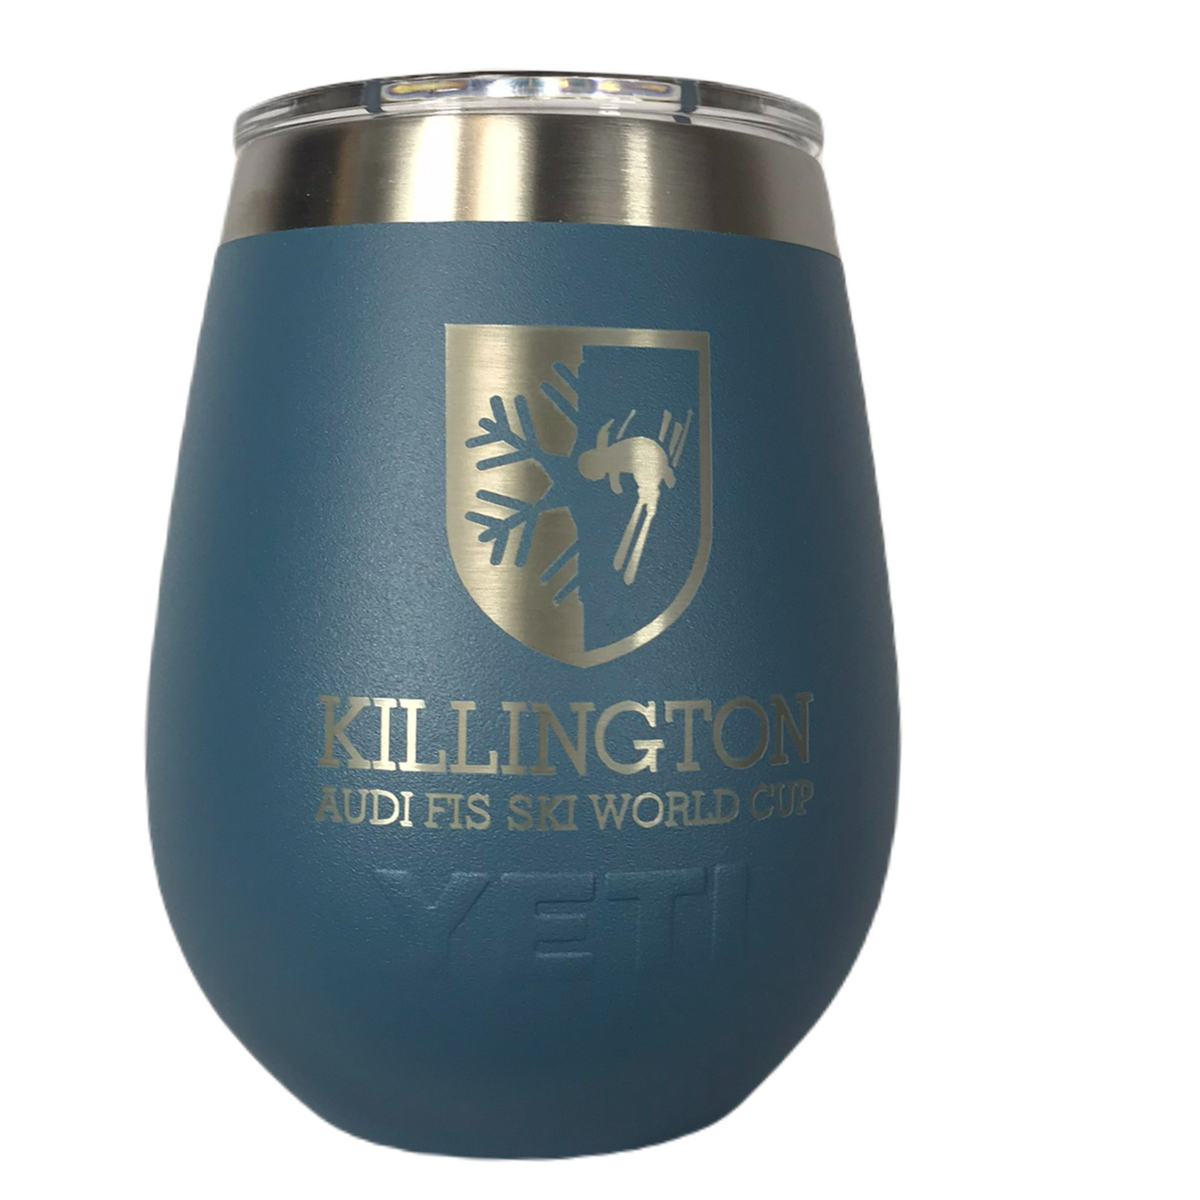 http://killingtonsports.com/cdn/shop/files/Killington-Cup-Logo-YETI-10oz-Wine-Tumbler-Nordic-Blue_1200x1200.png?v=1687975667